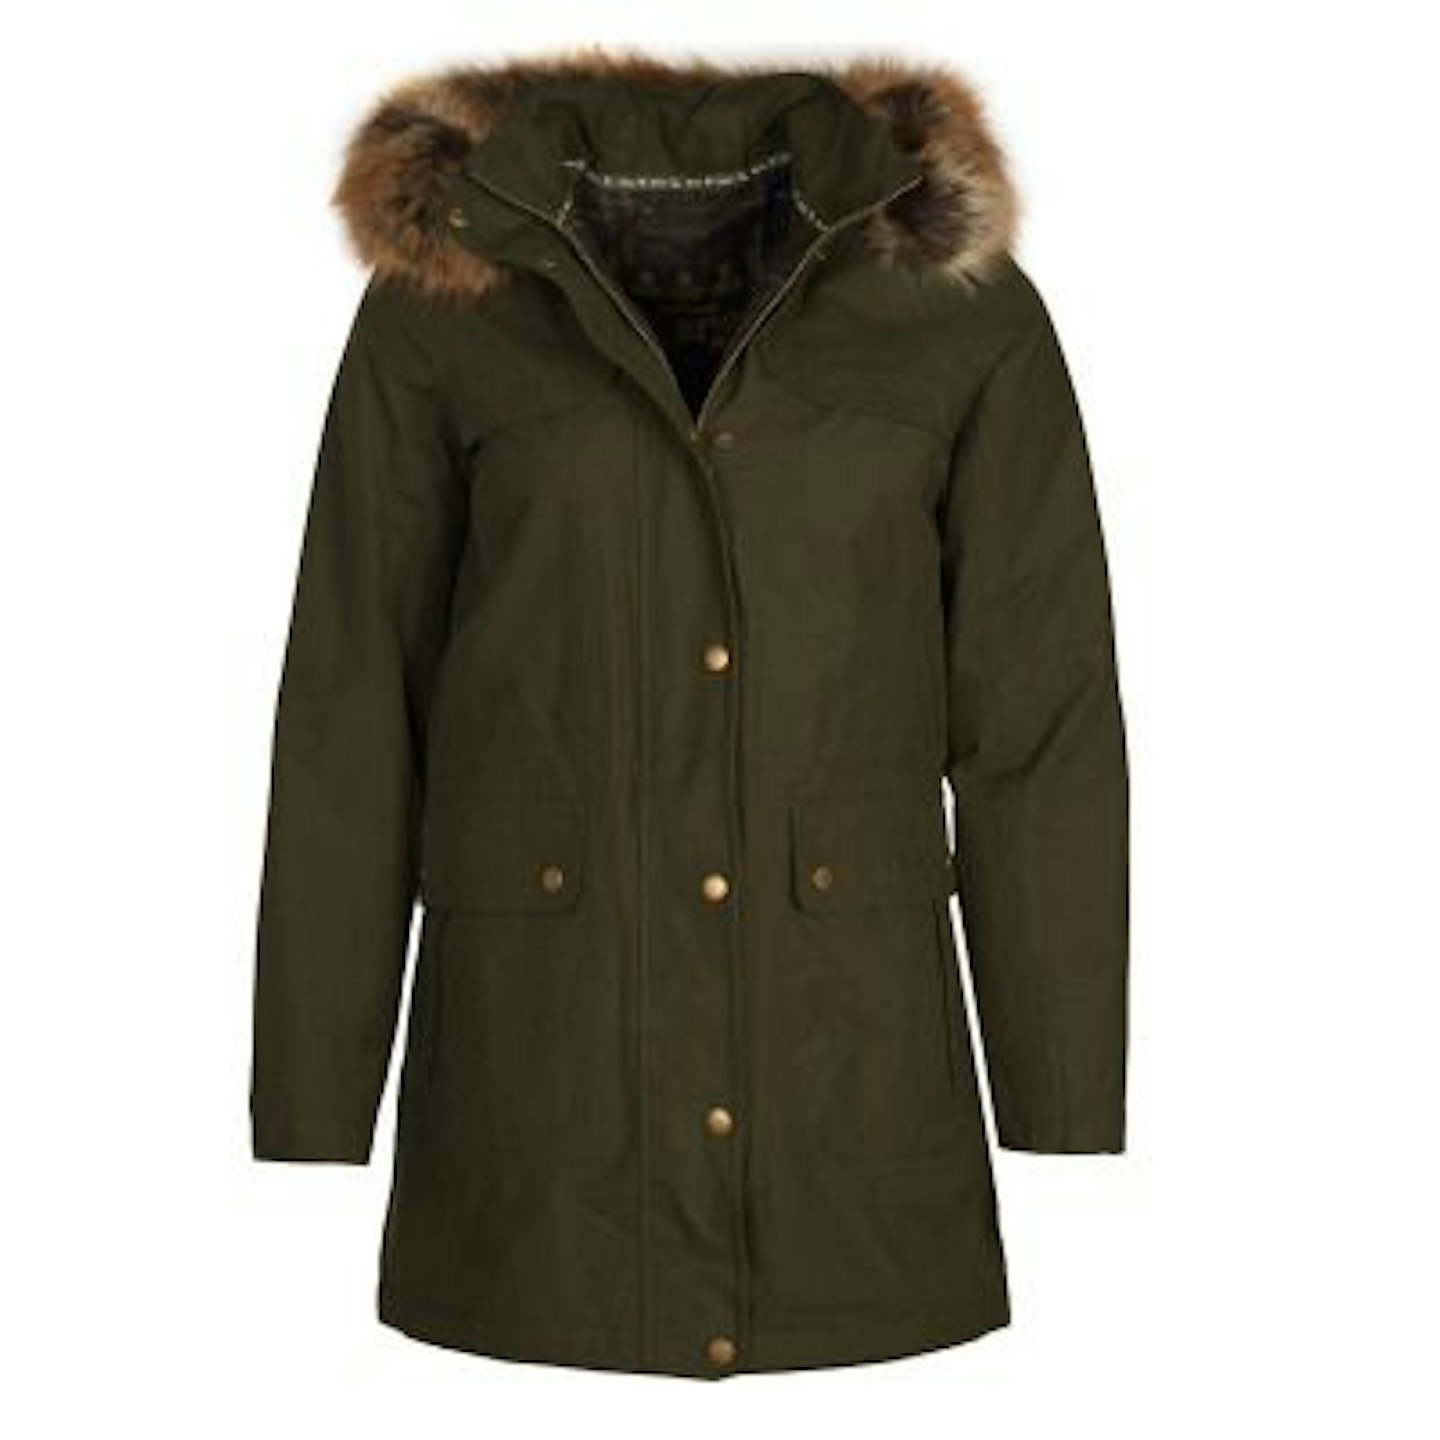 Barbour, Waterproof Jacket With Faux Fur Hood, £169.95